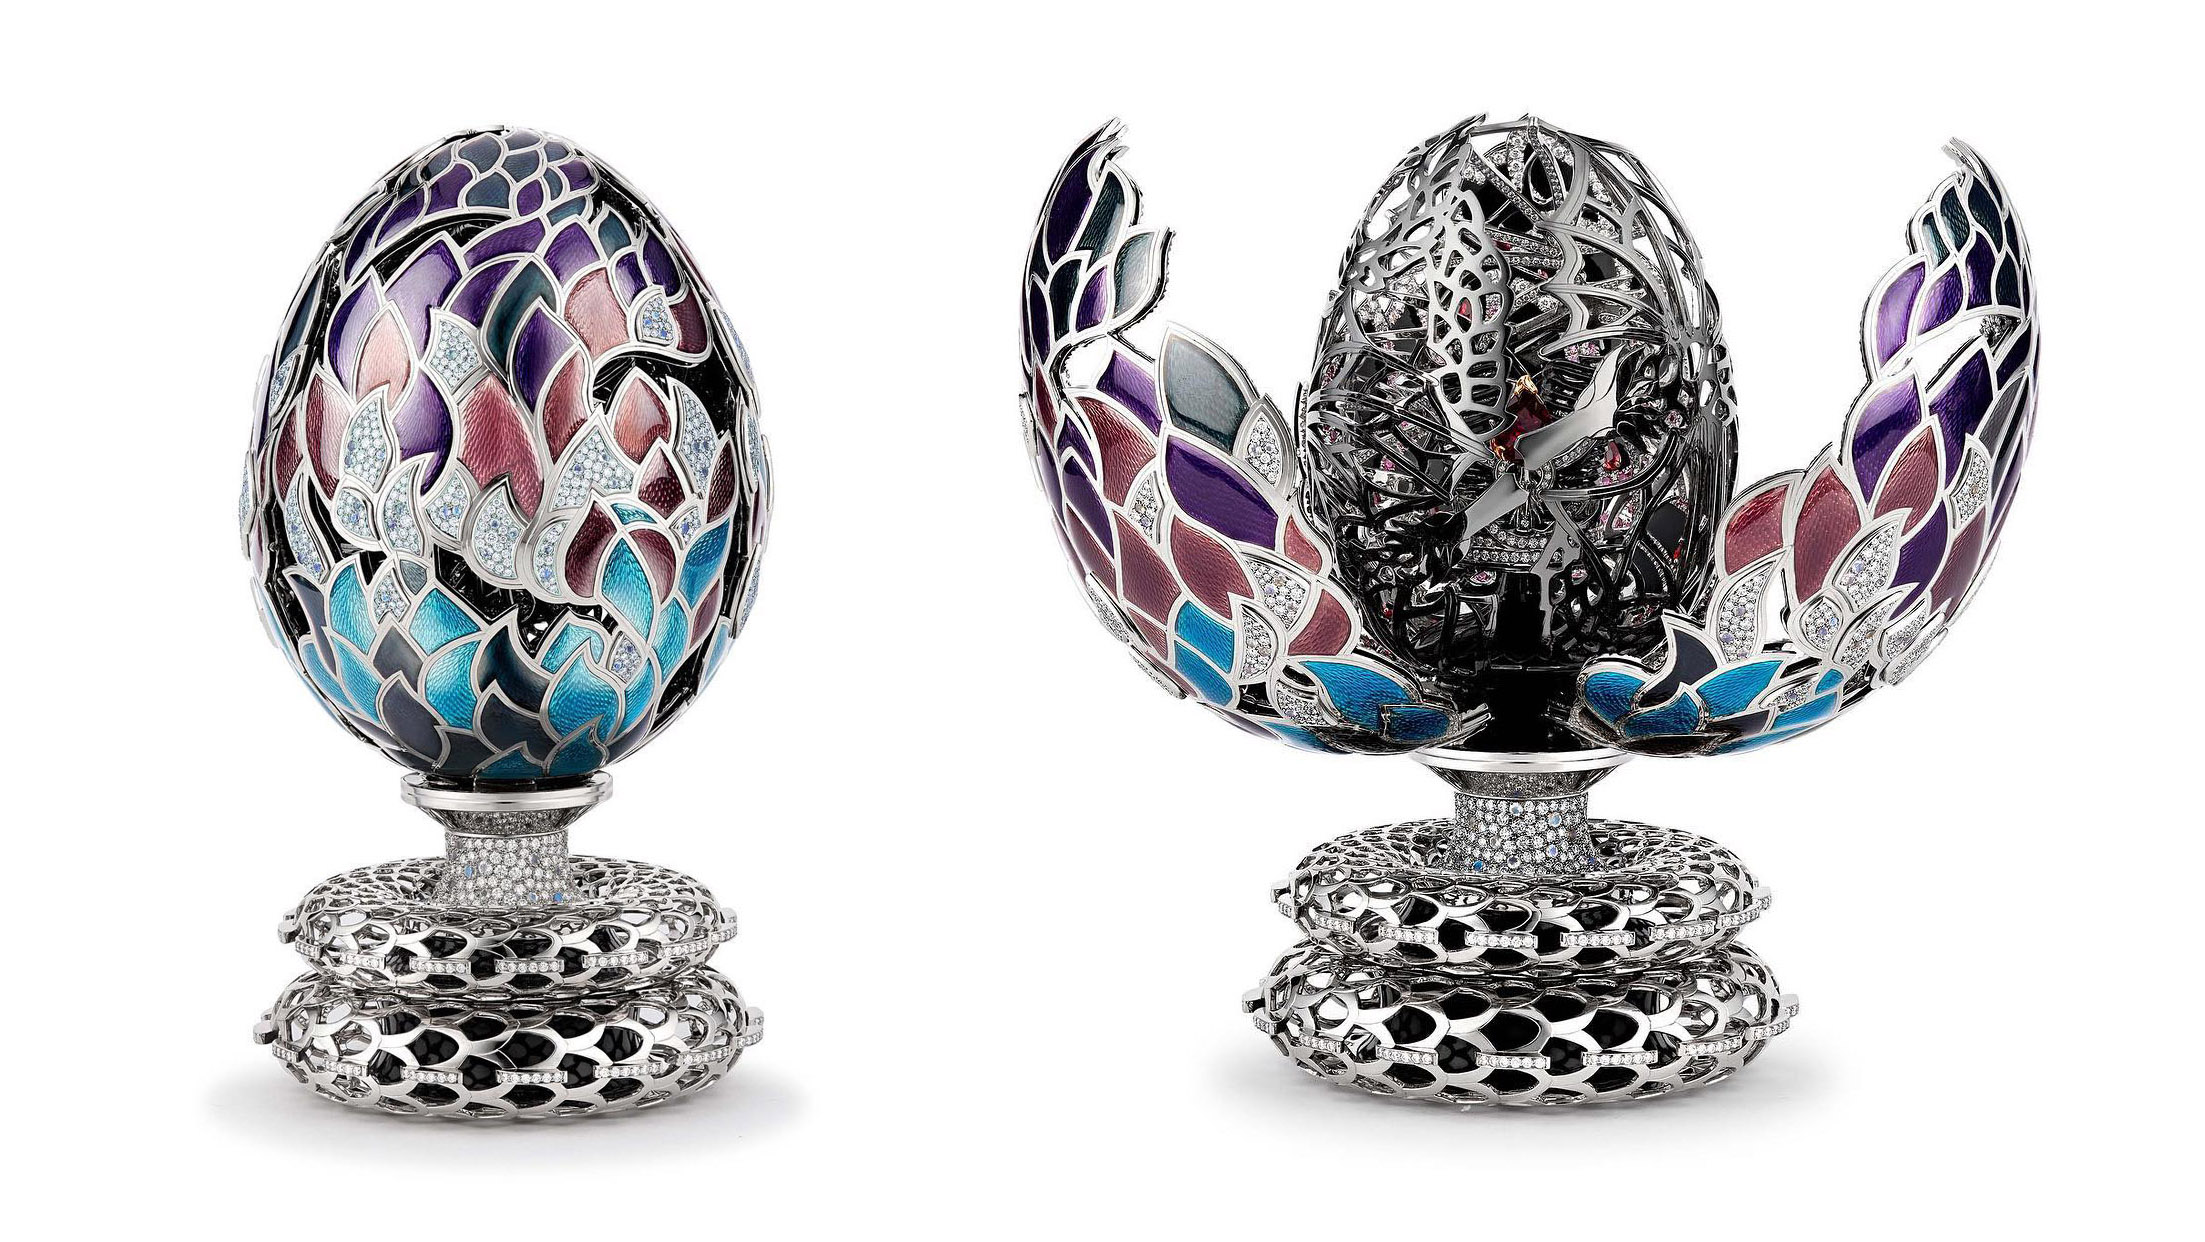 یک تخم اژدهای گرانقیمت و الهام گرفته شده از شخصیت دنریس تارگرین در سریال Game of Thrones به قیمت 2.22 میلیون دلار به فروش رسید.